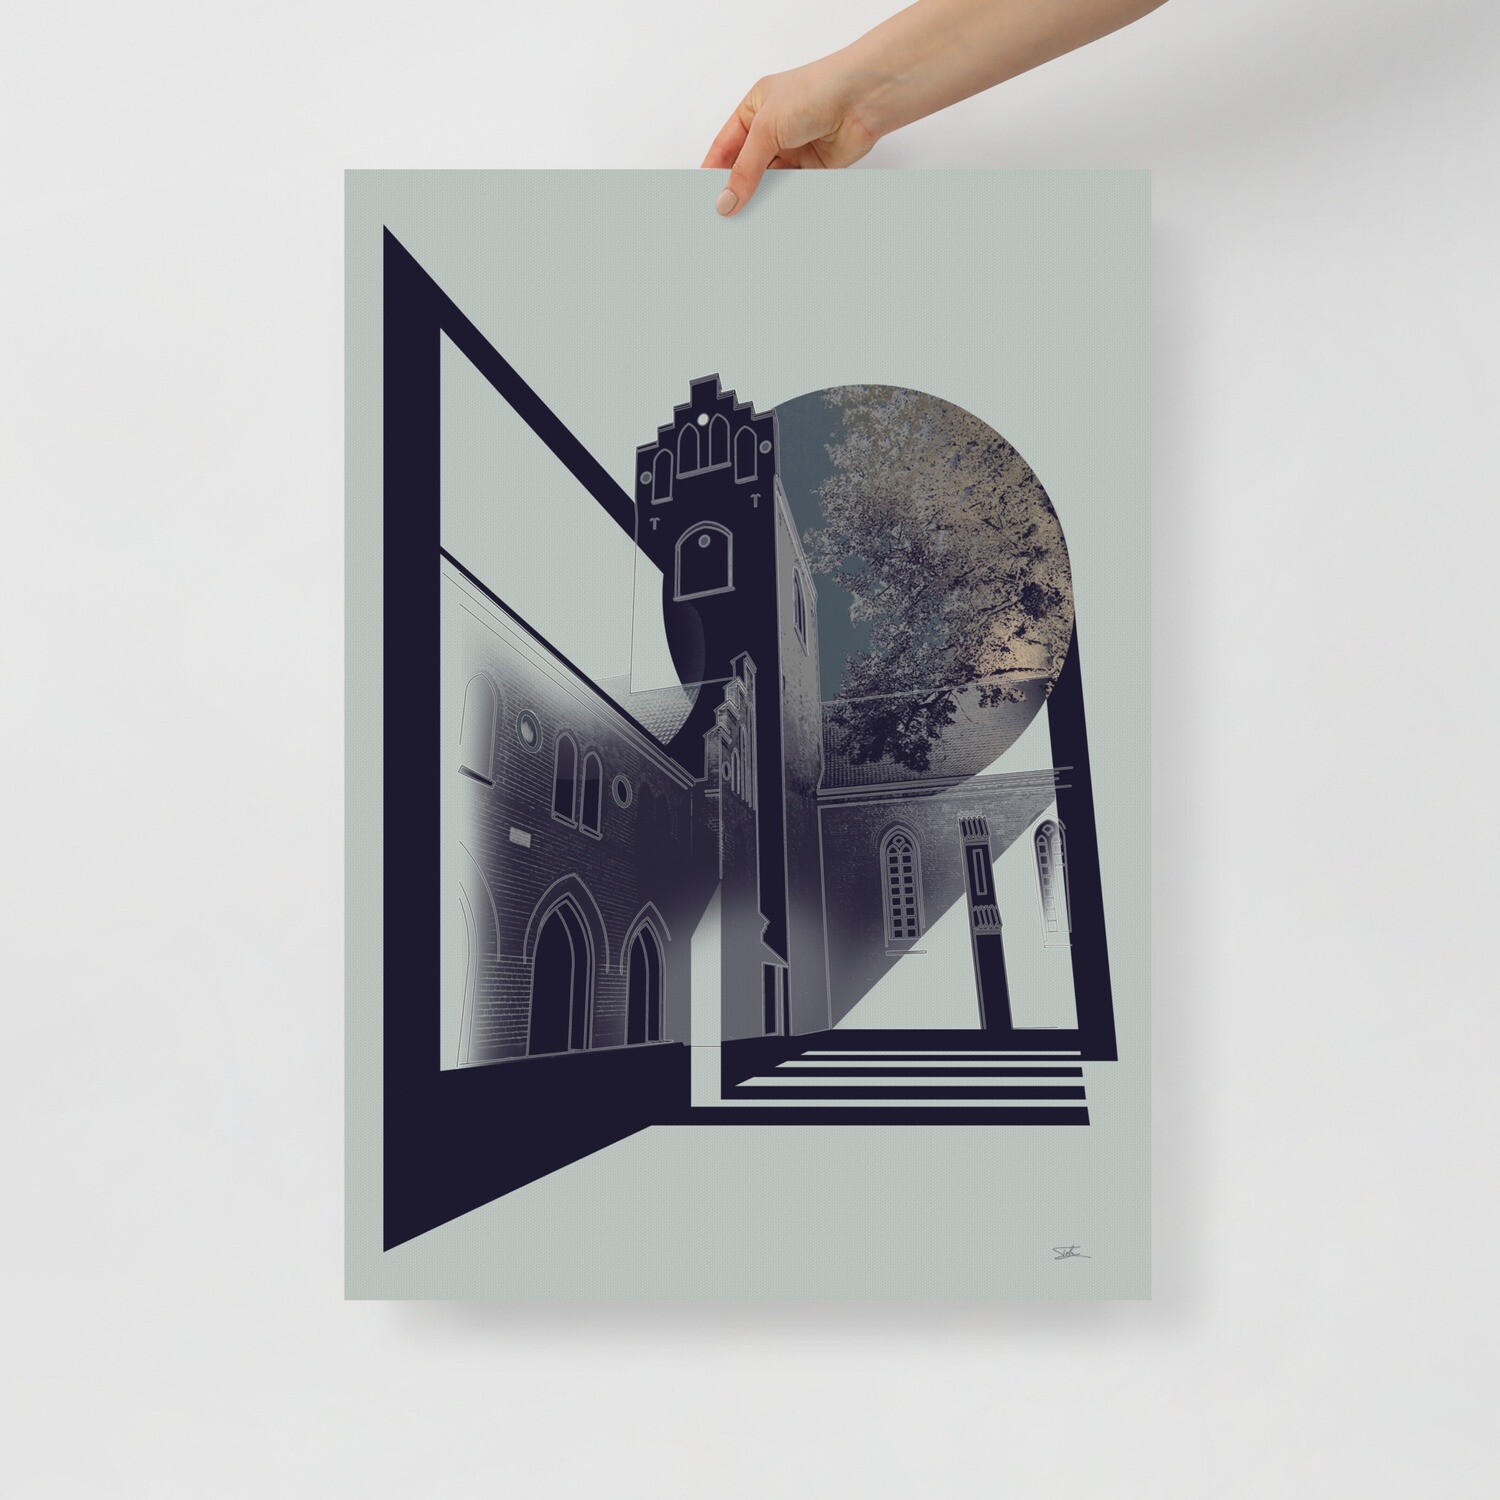 Plakat "Månelys over klostergaarden", 50x70 cm.
Dette værk trykkes kun i 20 eksemplarer.